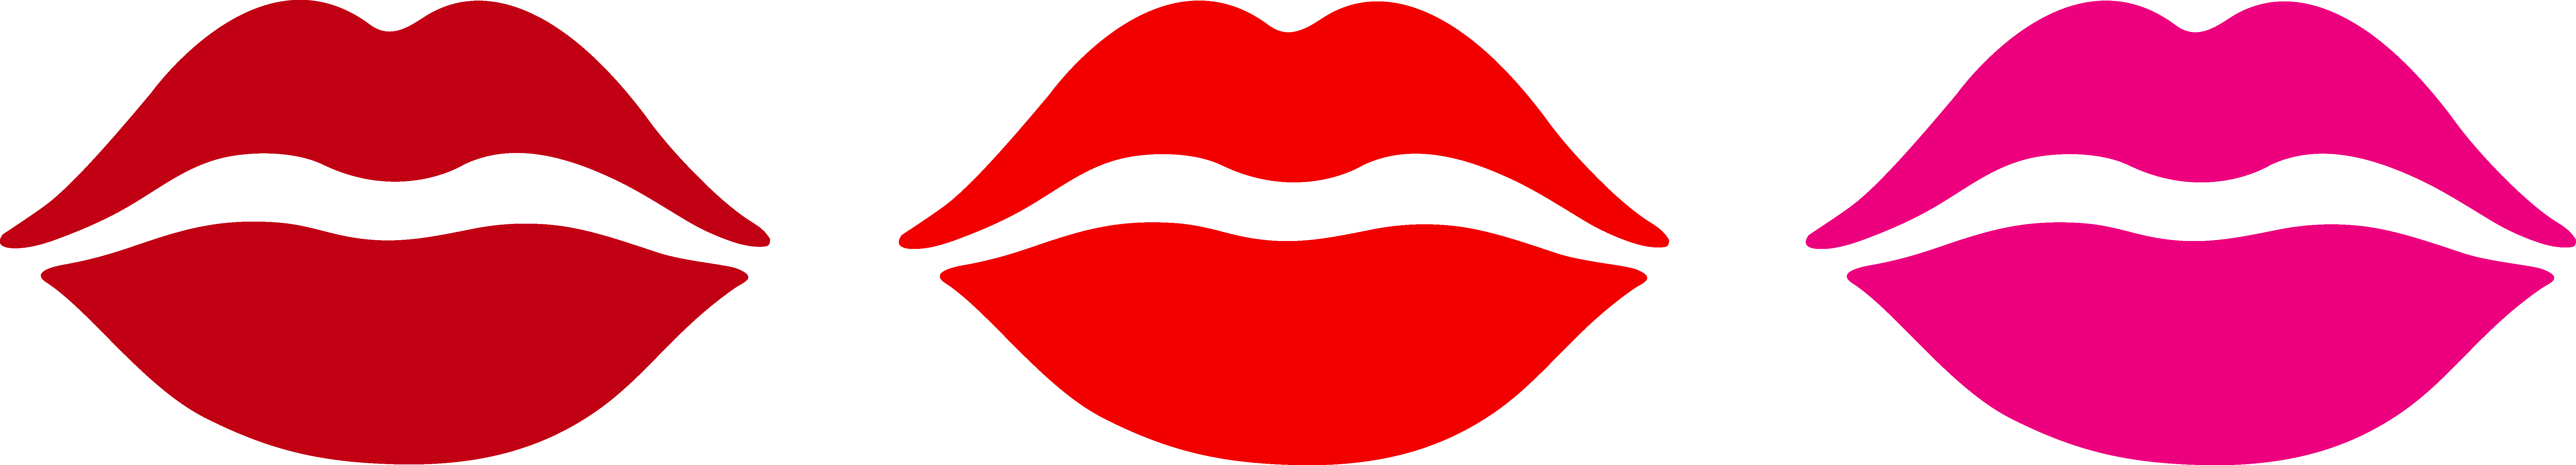 Pin Kiss Lips Cartoon on Pinterest